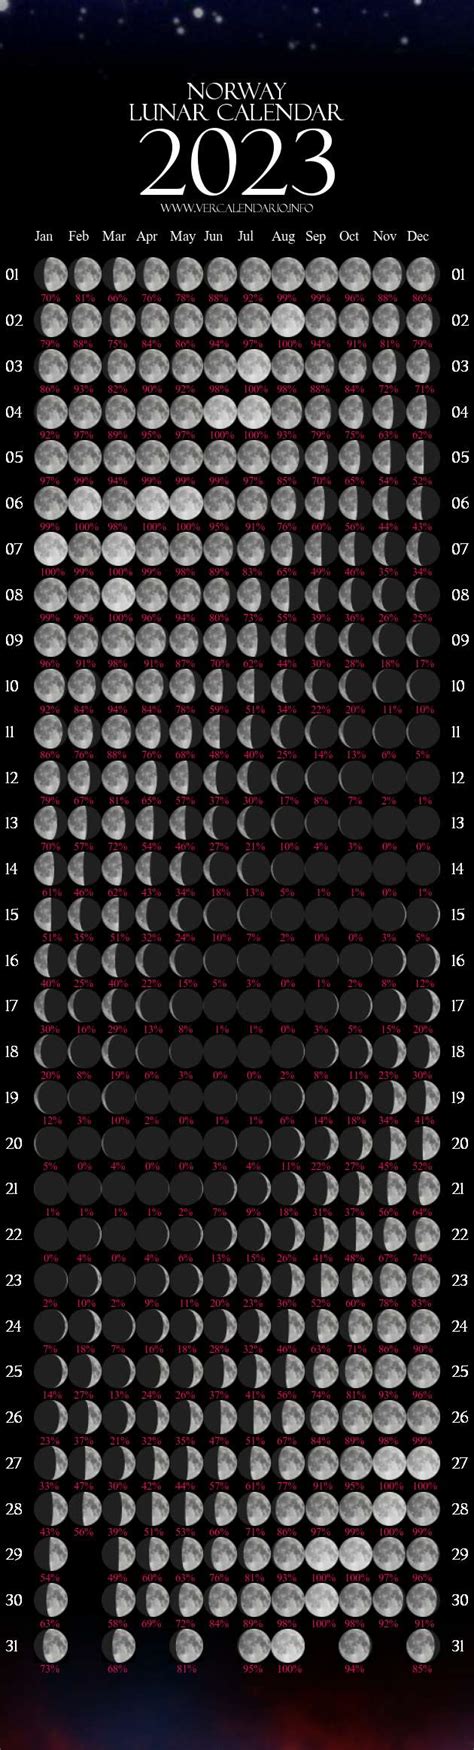 Calendario Lunar En 2023 Pmsl Imagesee